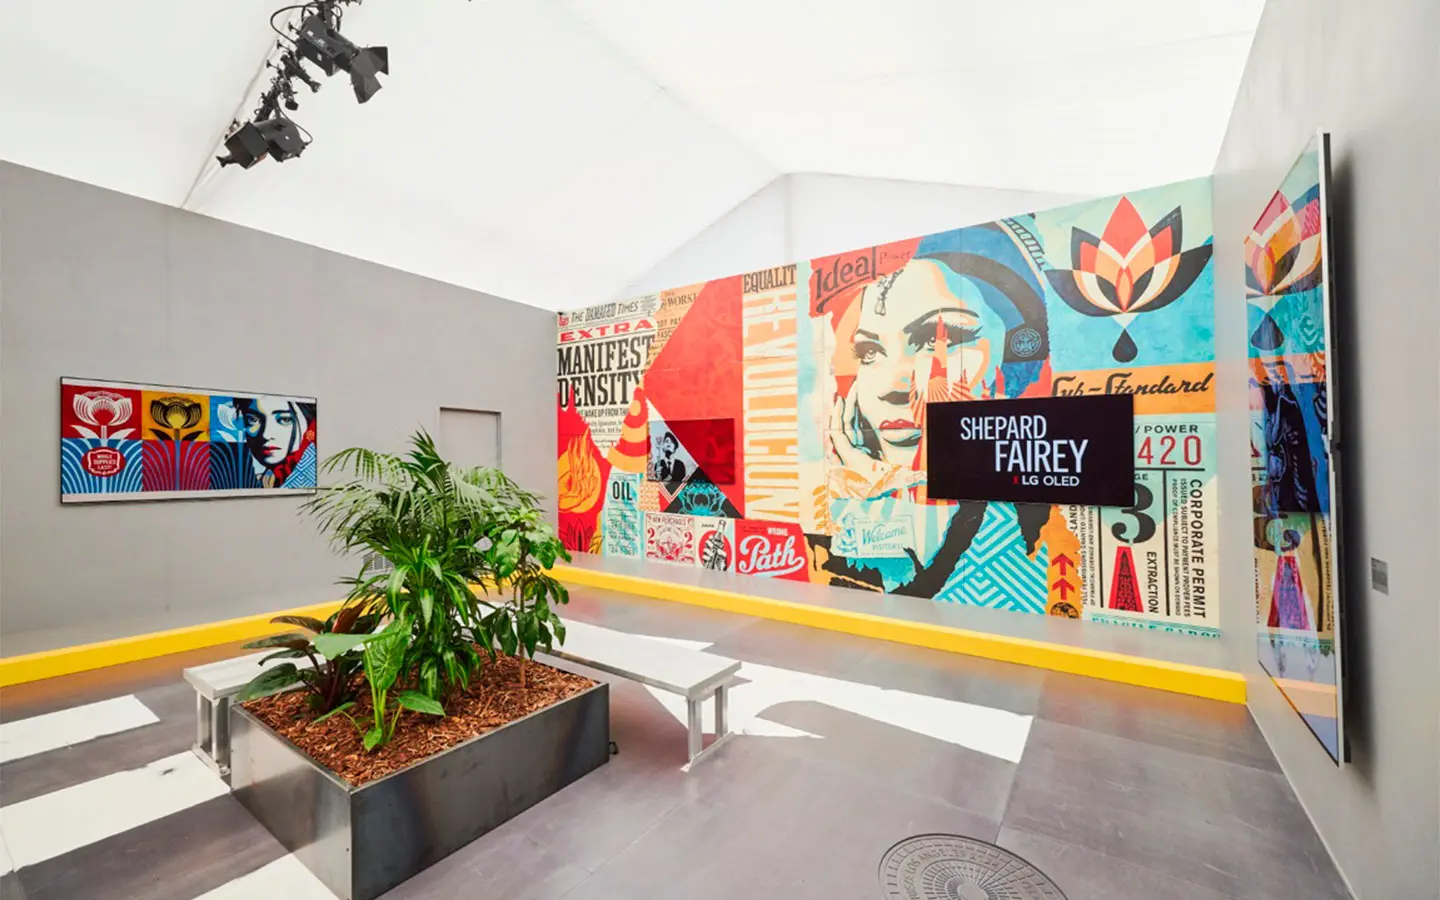 LG Oled y Shepard Fairey llevan el arte callejero al mundo digital